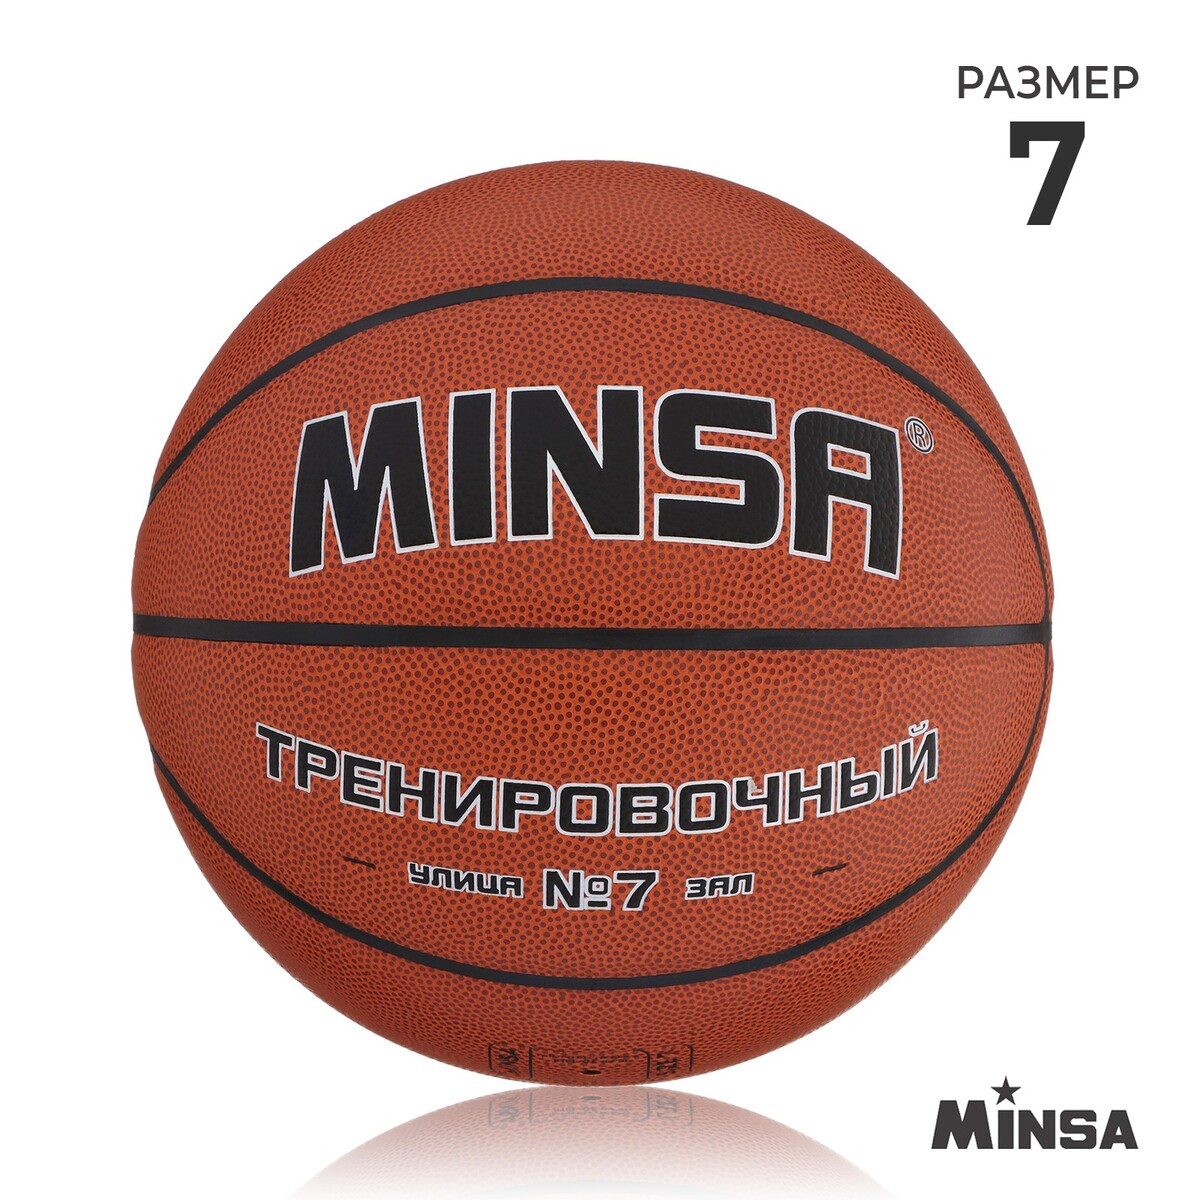 Баскетбольный мяч minsa, тренировочный, pu, клееный, 8 панелей, р. 7 мяч баскетбольный minsa пвх клееный 8 панелей р 5